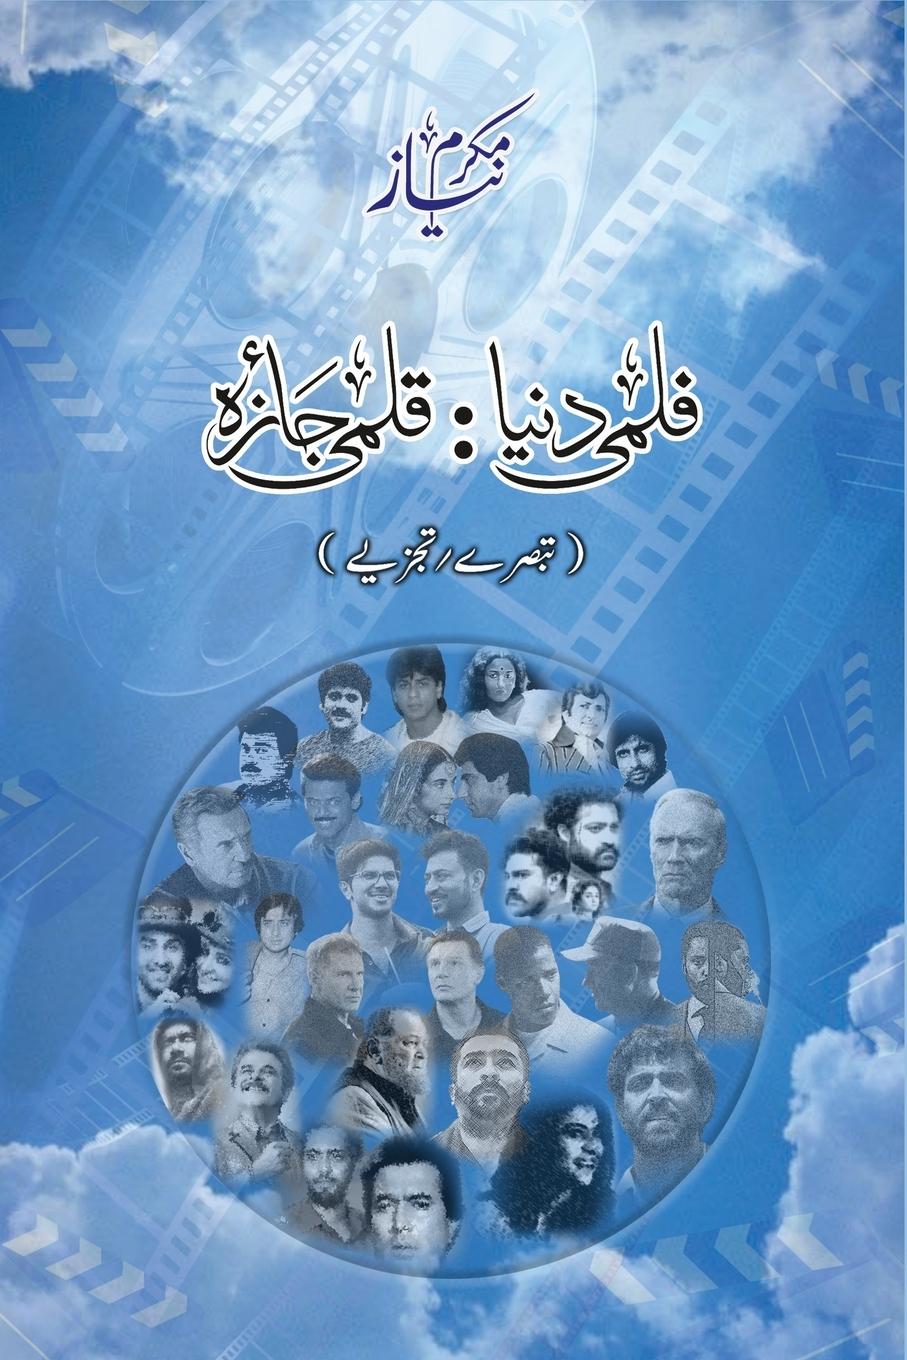 Book Filmi Dunya Qalmi Jaiza (Movie Reviews) 